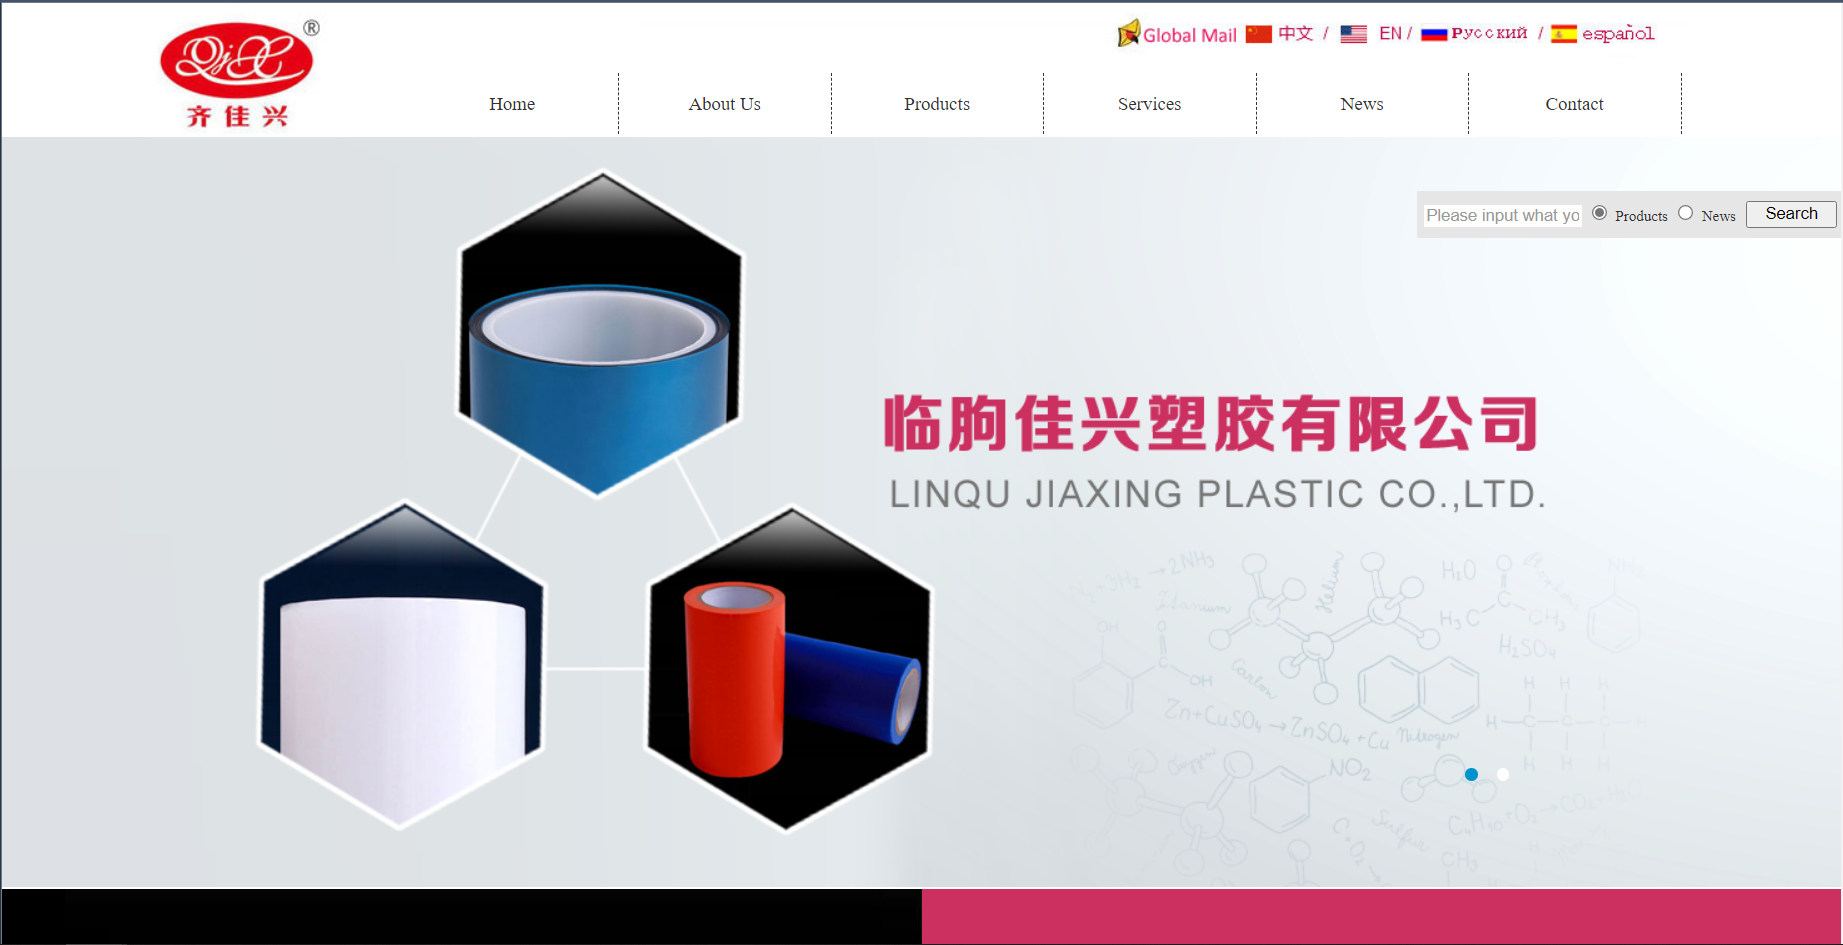 Linqu Jiaxing Plastic Co, Ltd